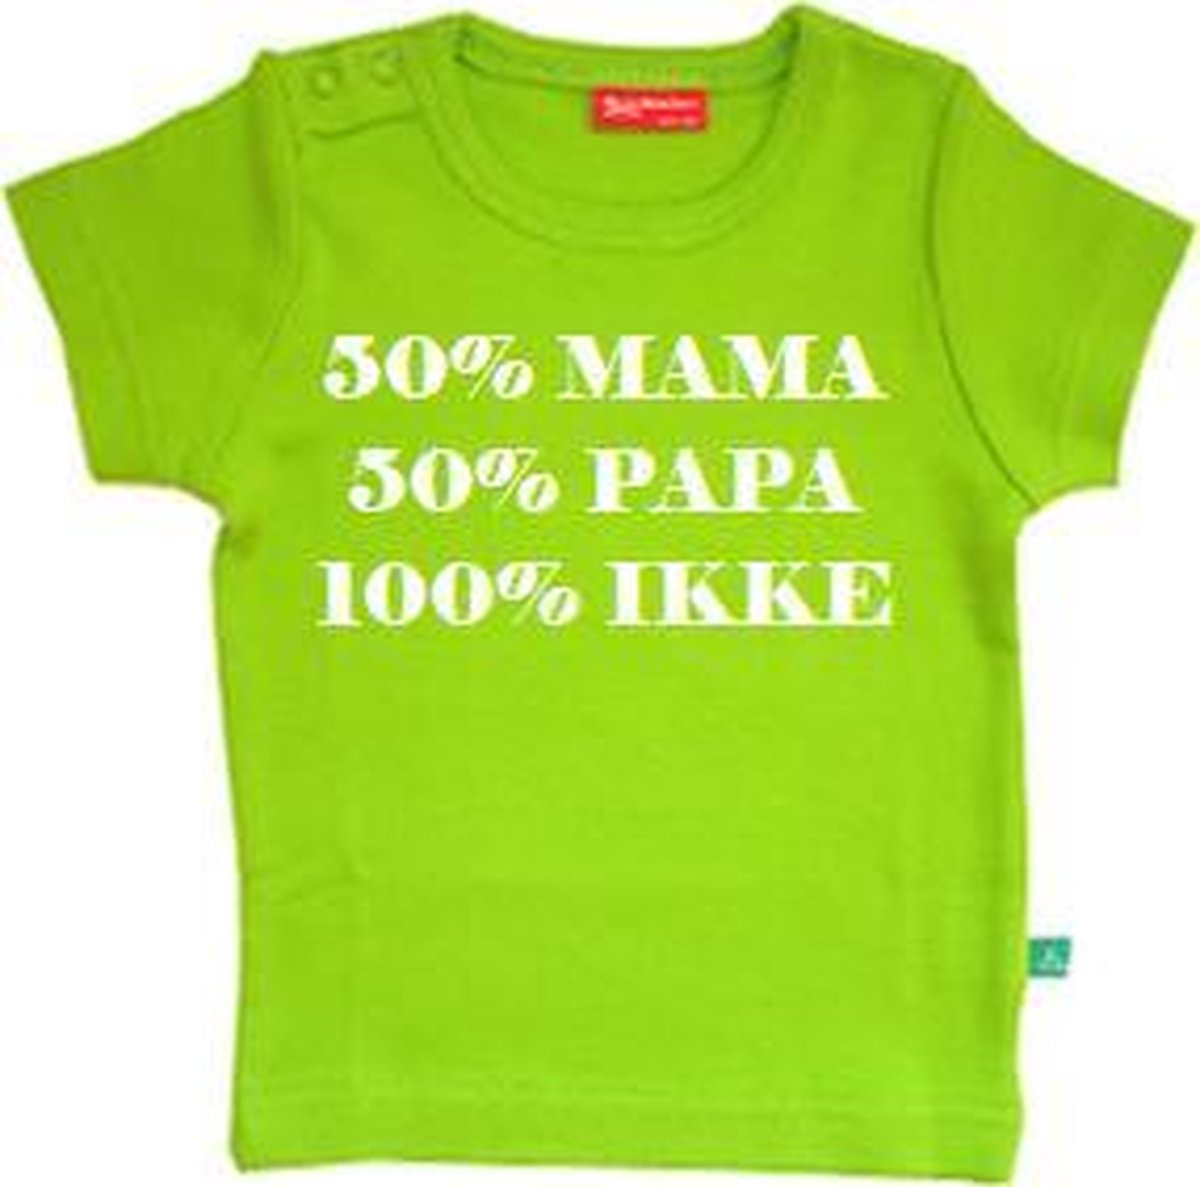 50% Mama 50% Papa 100% ikke T-shirt | lime groen | 50/56